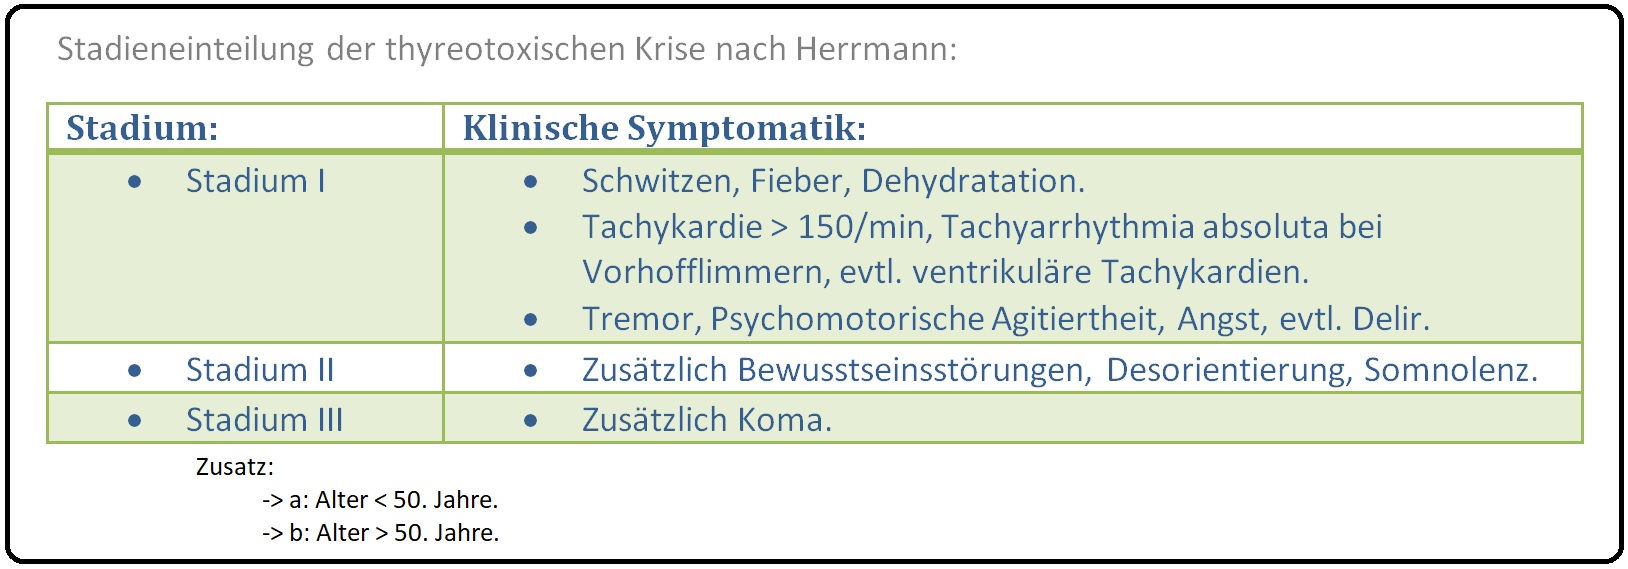 1307 Stadieneinteilung der thyreotoxischen Krise nach Herrmann